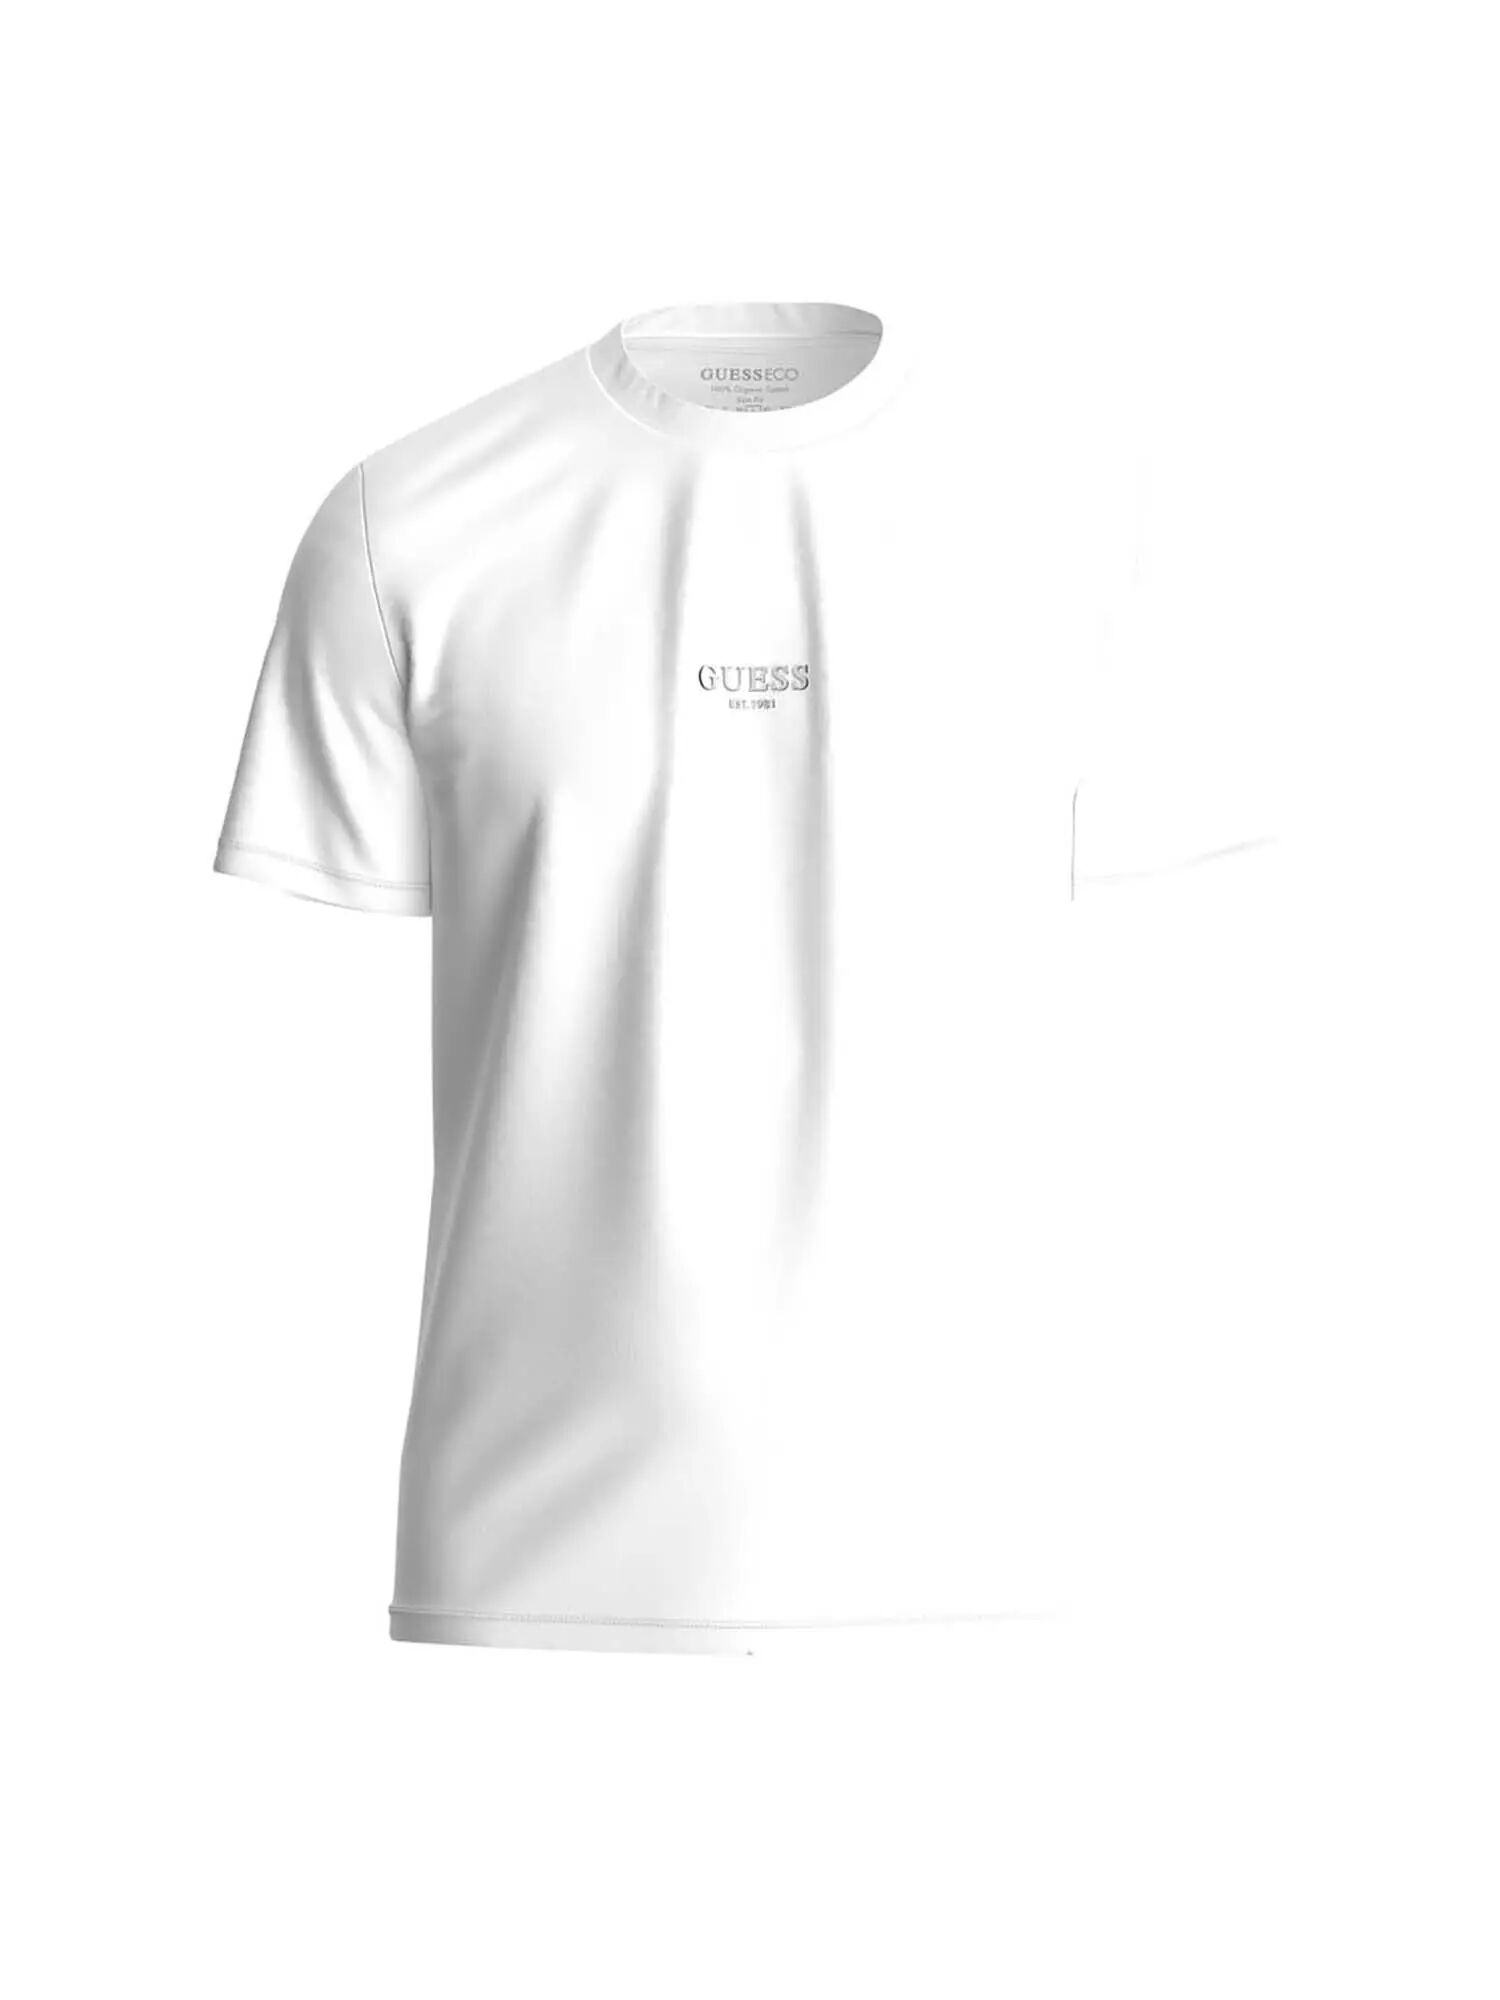 Guess T-shirt Uomo Colore Bianco BIANCO L